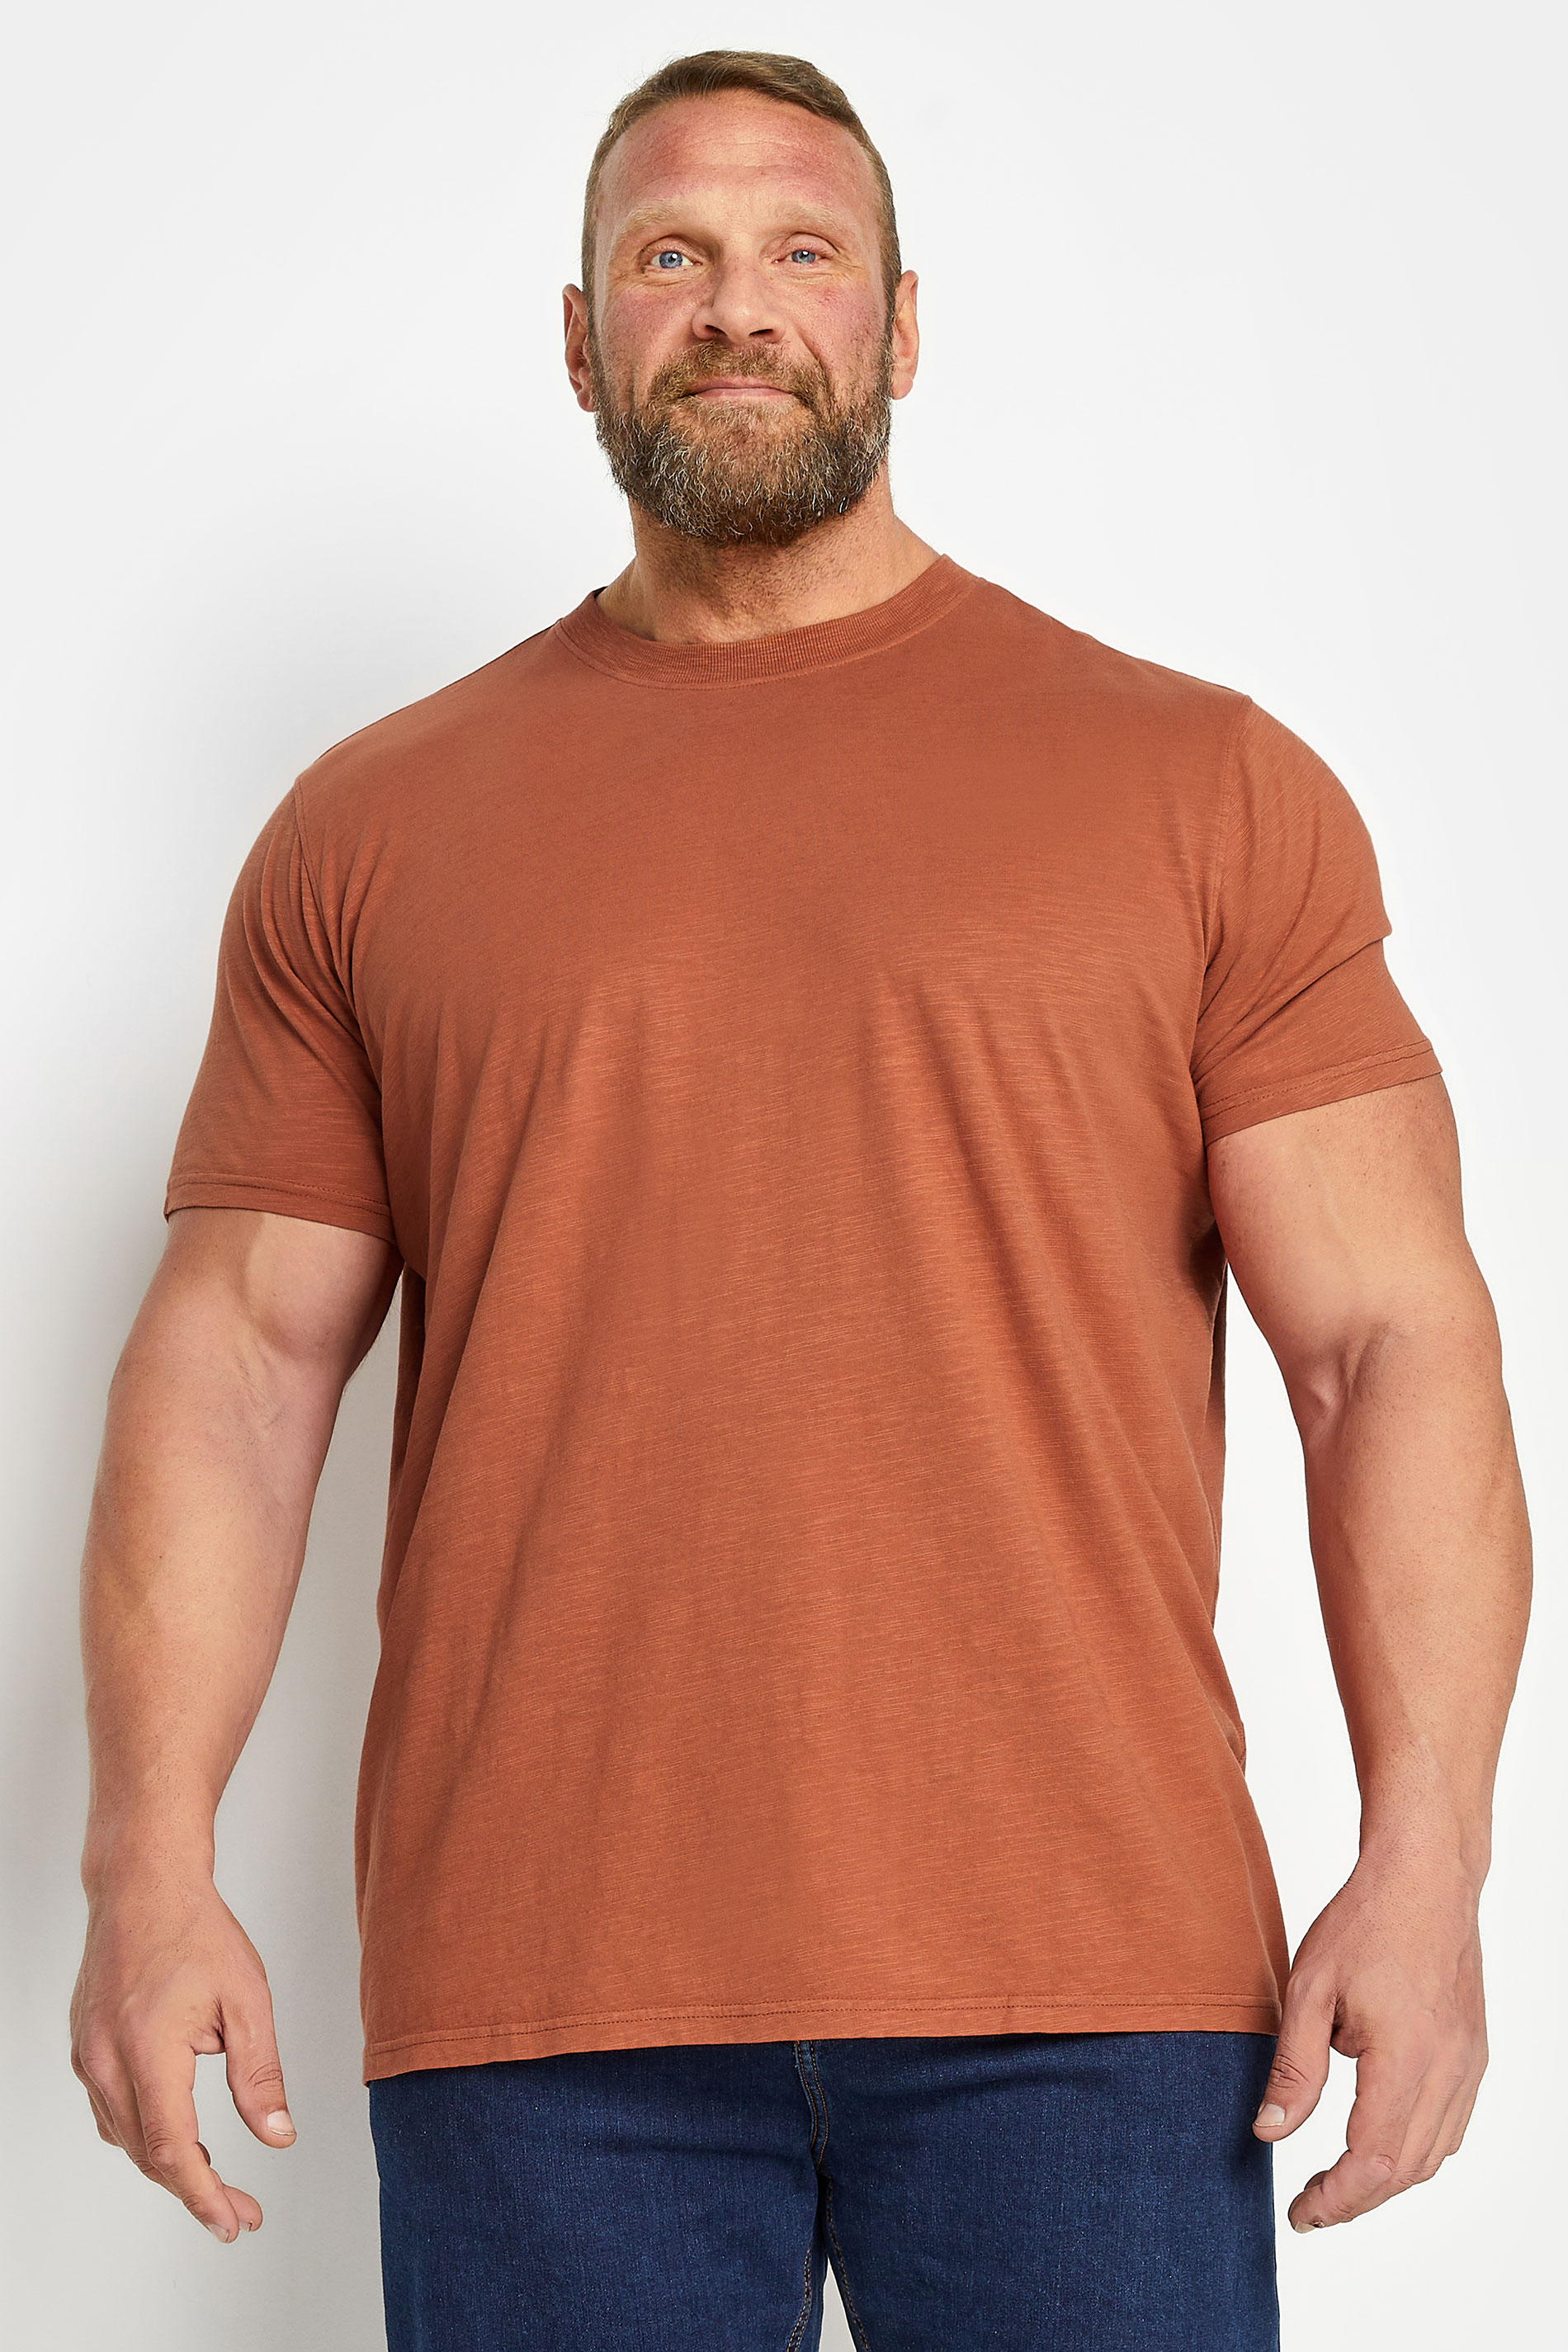 BadRhino Big & Tall Pecan Brown Slub T-Shirt | BadRhino 2